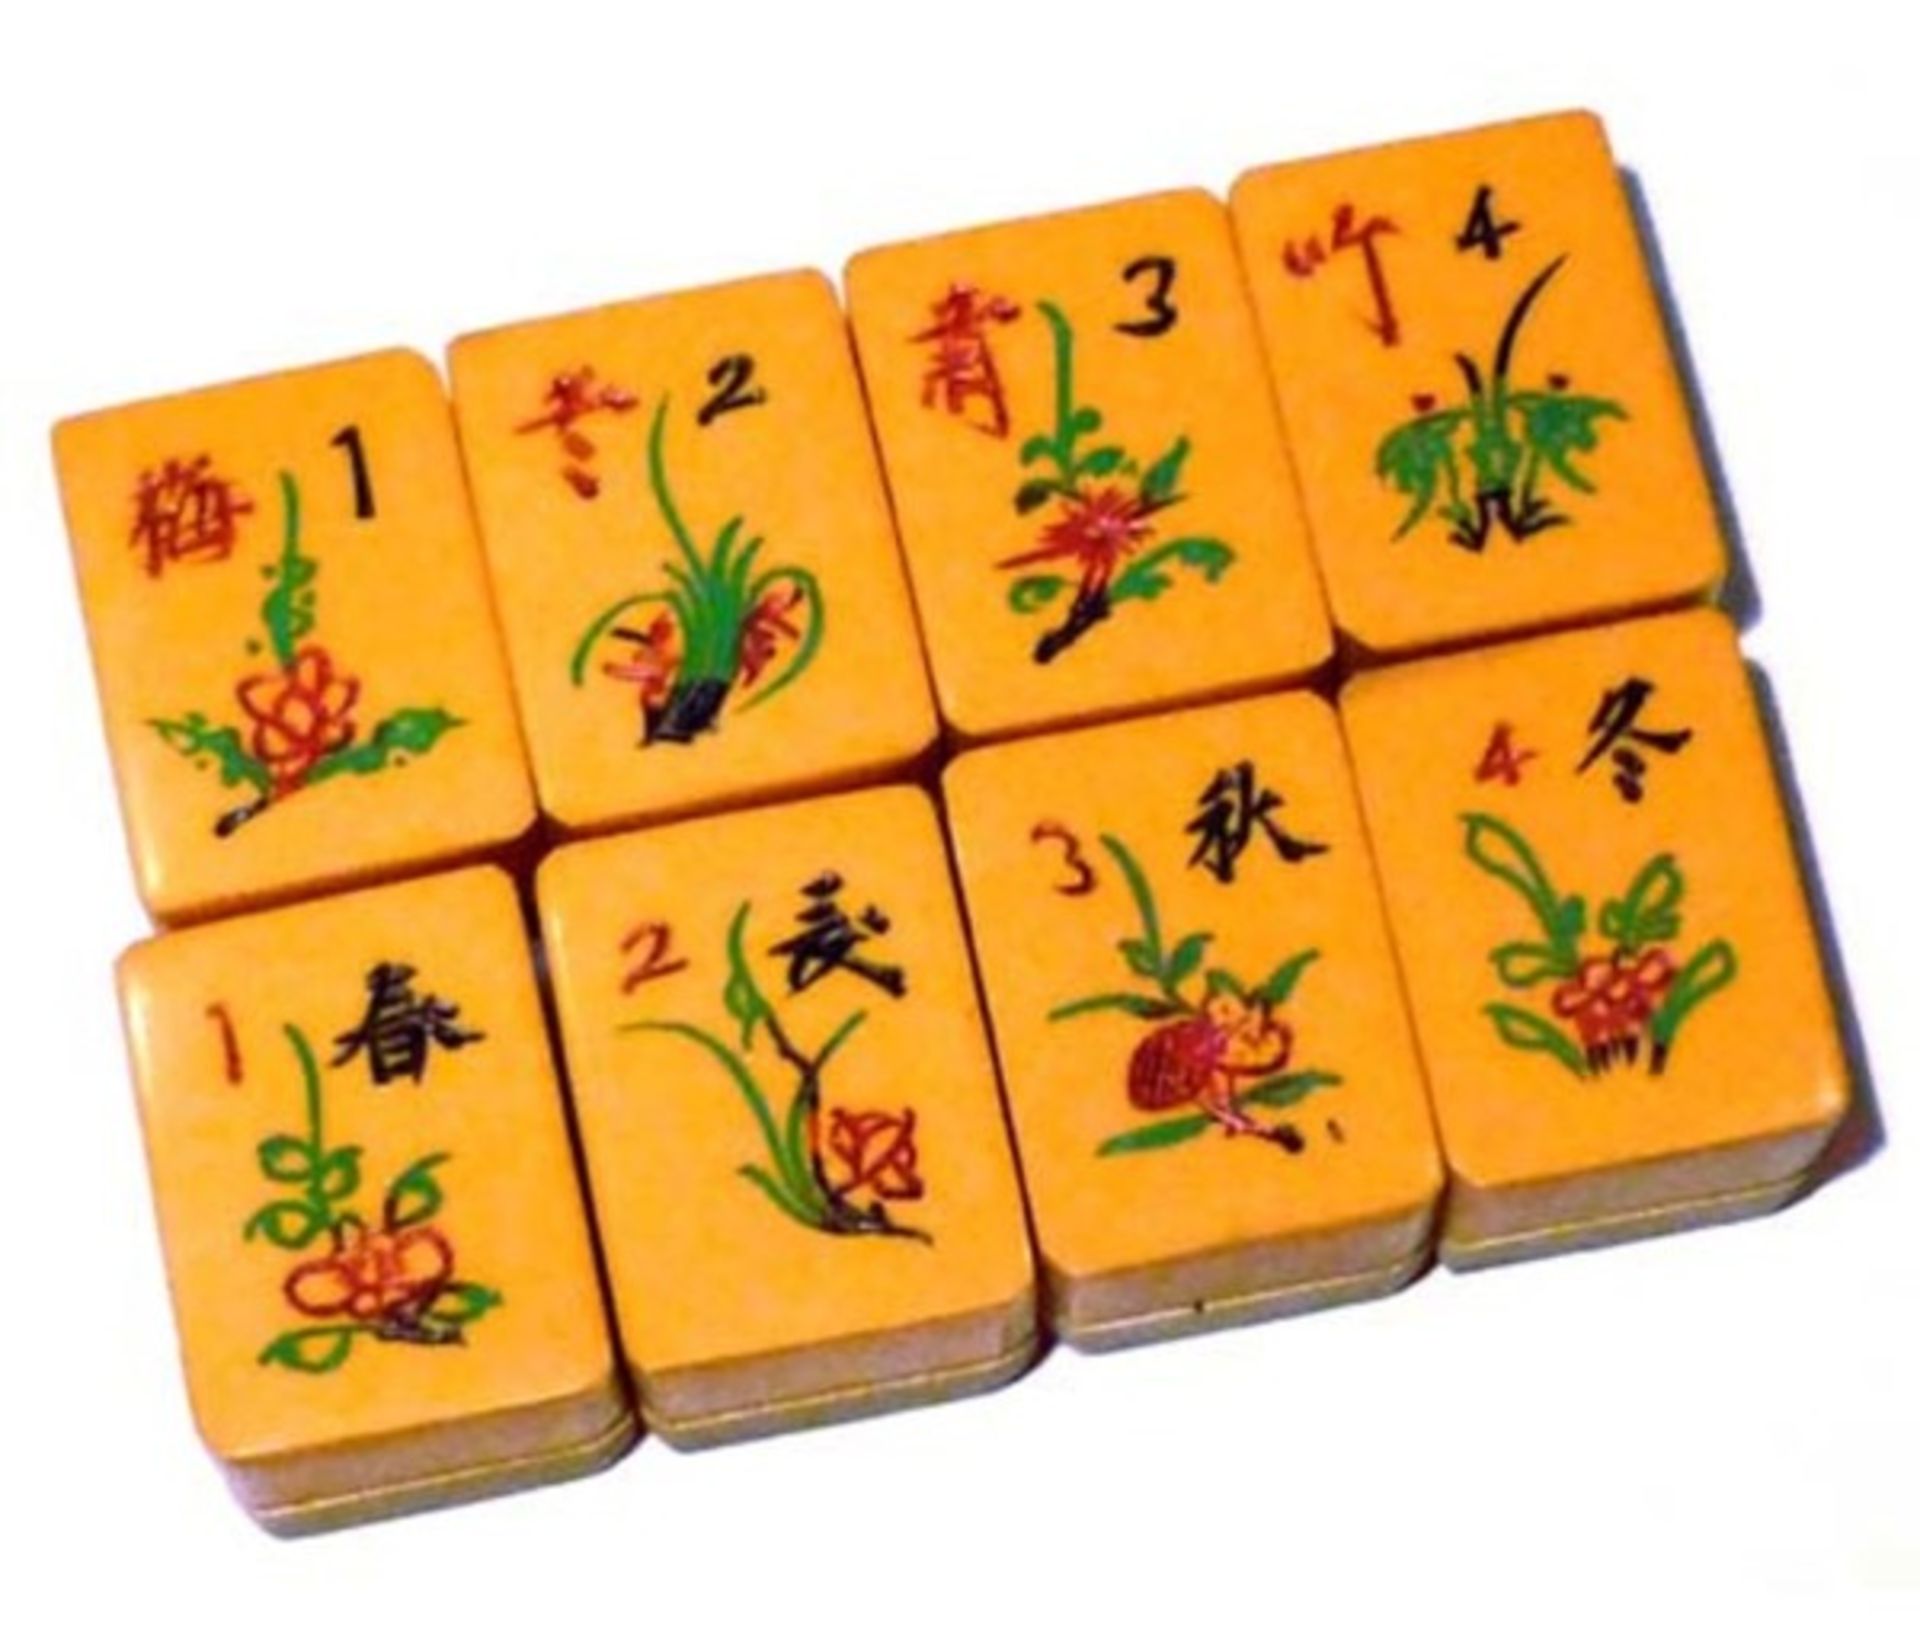 (Mahjong) Mahjong kunststof, stenen van kunststof en bamboe, ca. 1935 - Bild 11 aus 13